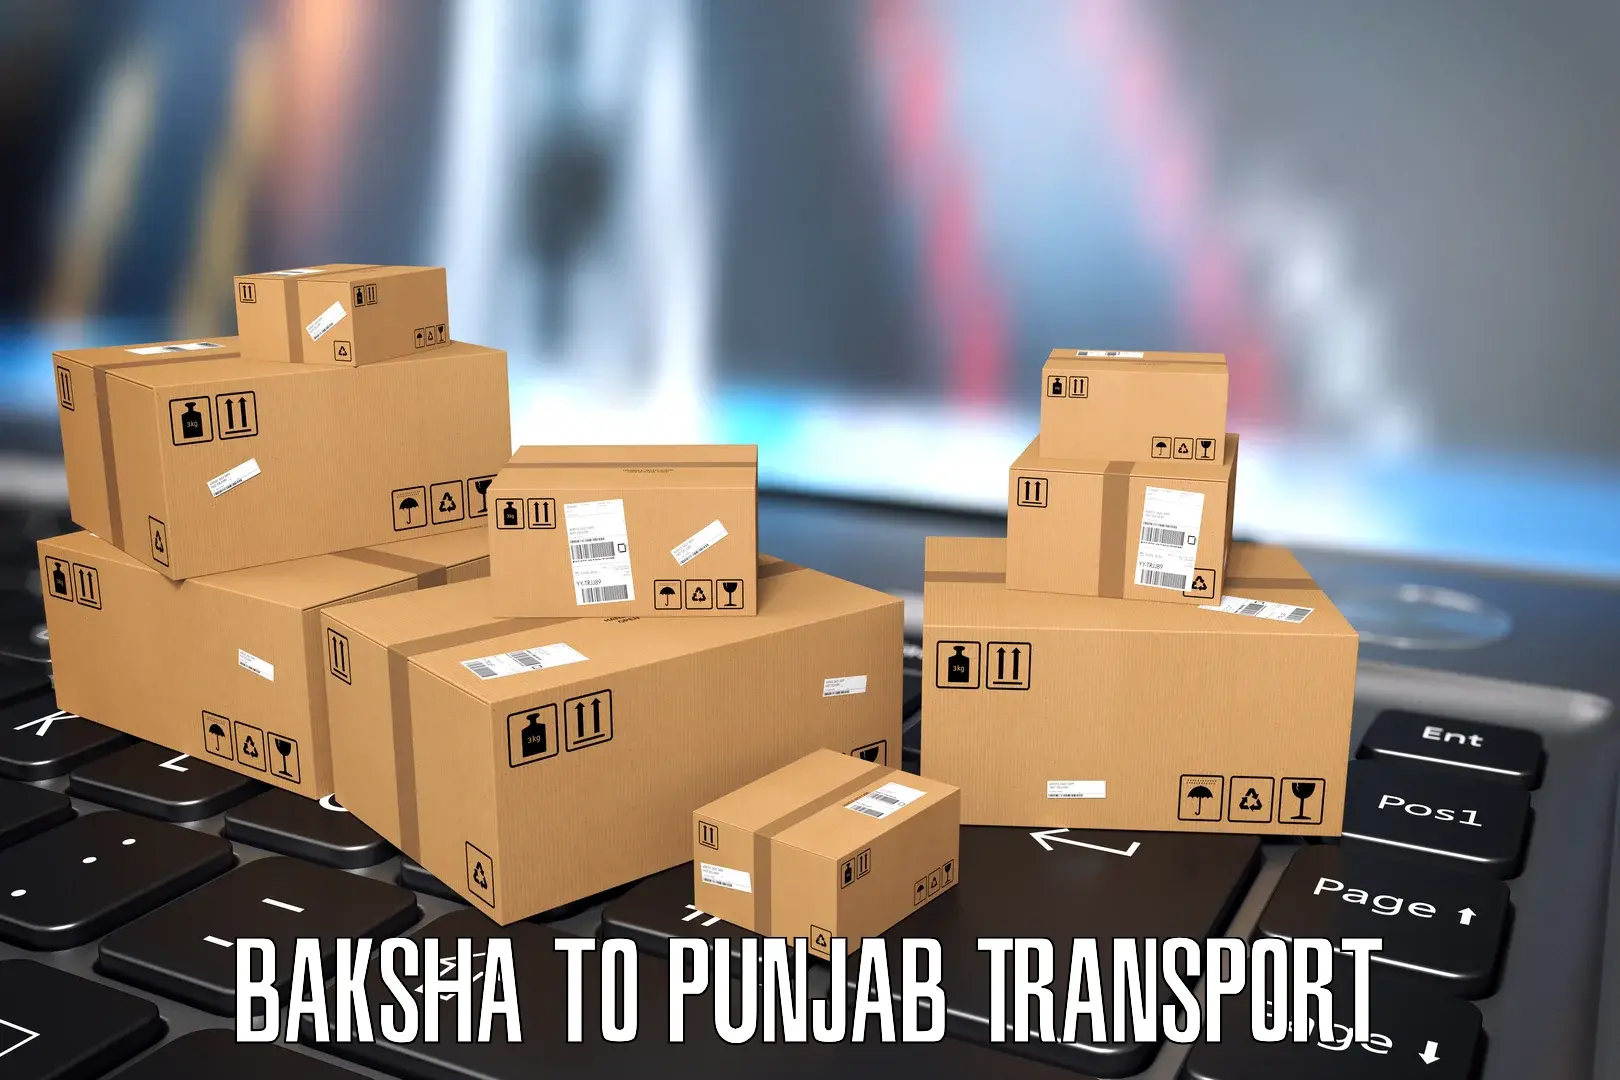 Parcel transport services Baksha to Mohali